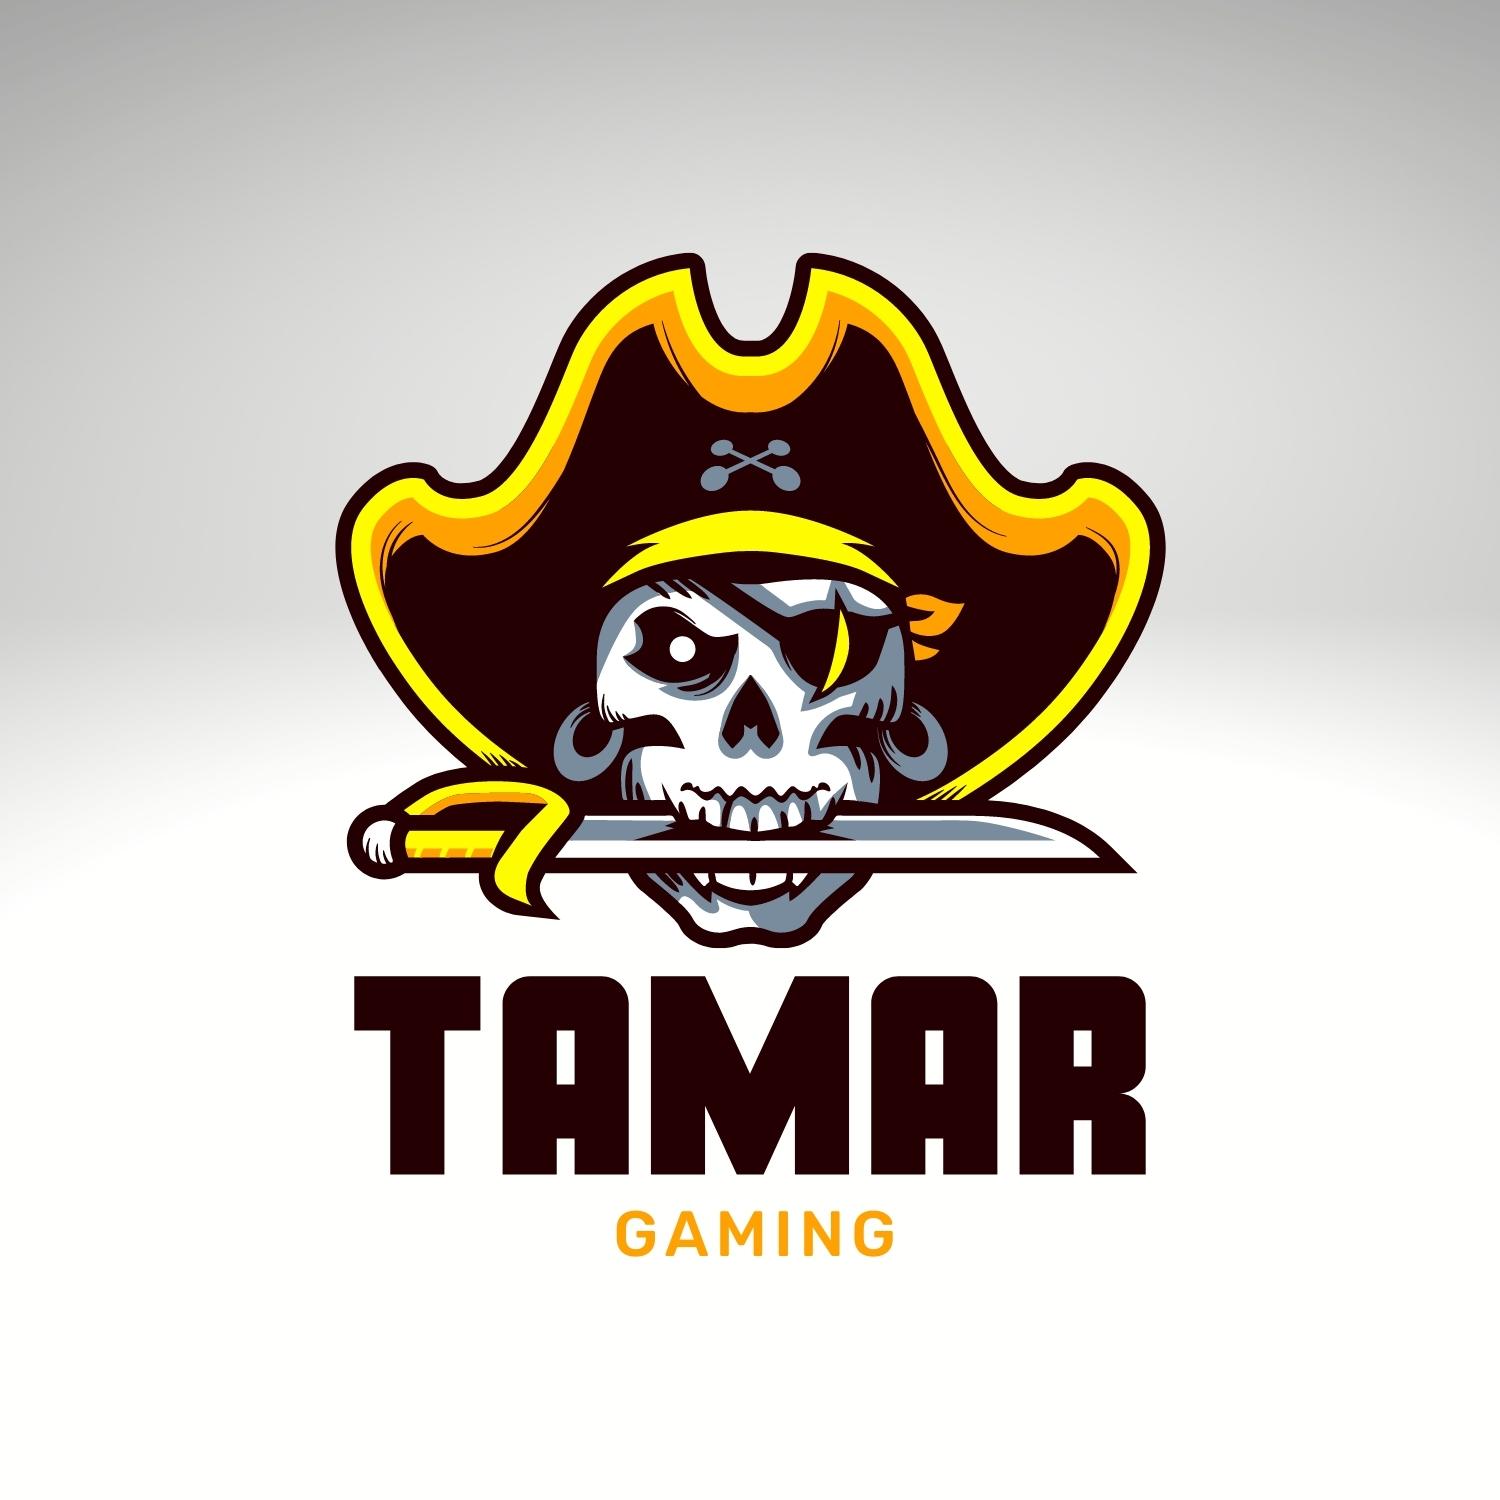 Sea pirates gaming logo